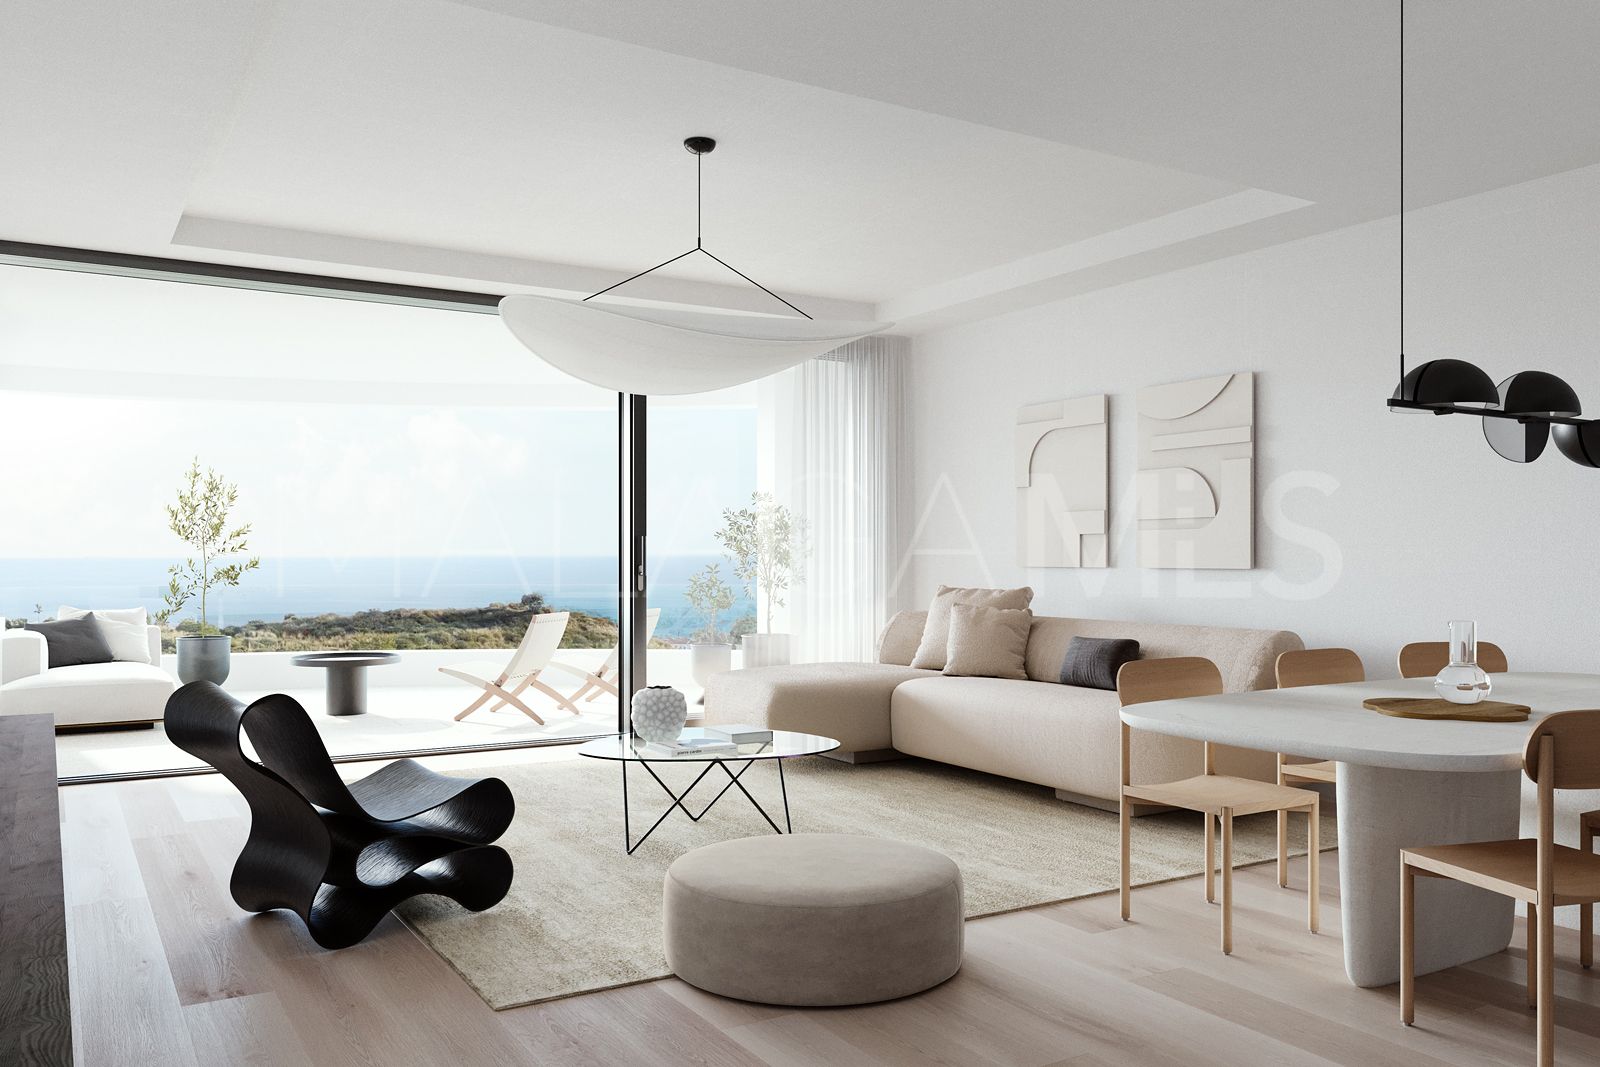 Adosado for sale with 3 bedrooms in Riviera del Sol